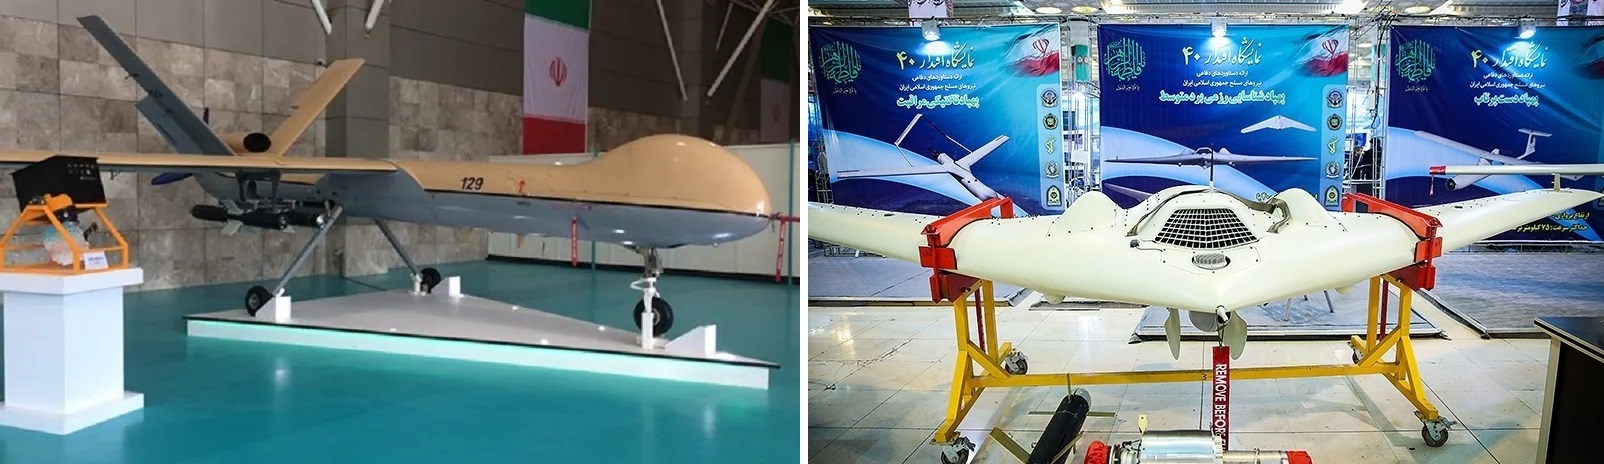 Rusia estudia la posibilidad de comprar aviones no tripulados Shahed iraníes que pueden transportar misiles de alta precisión